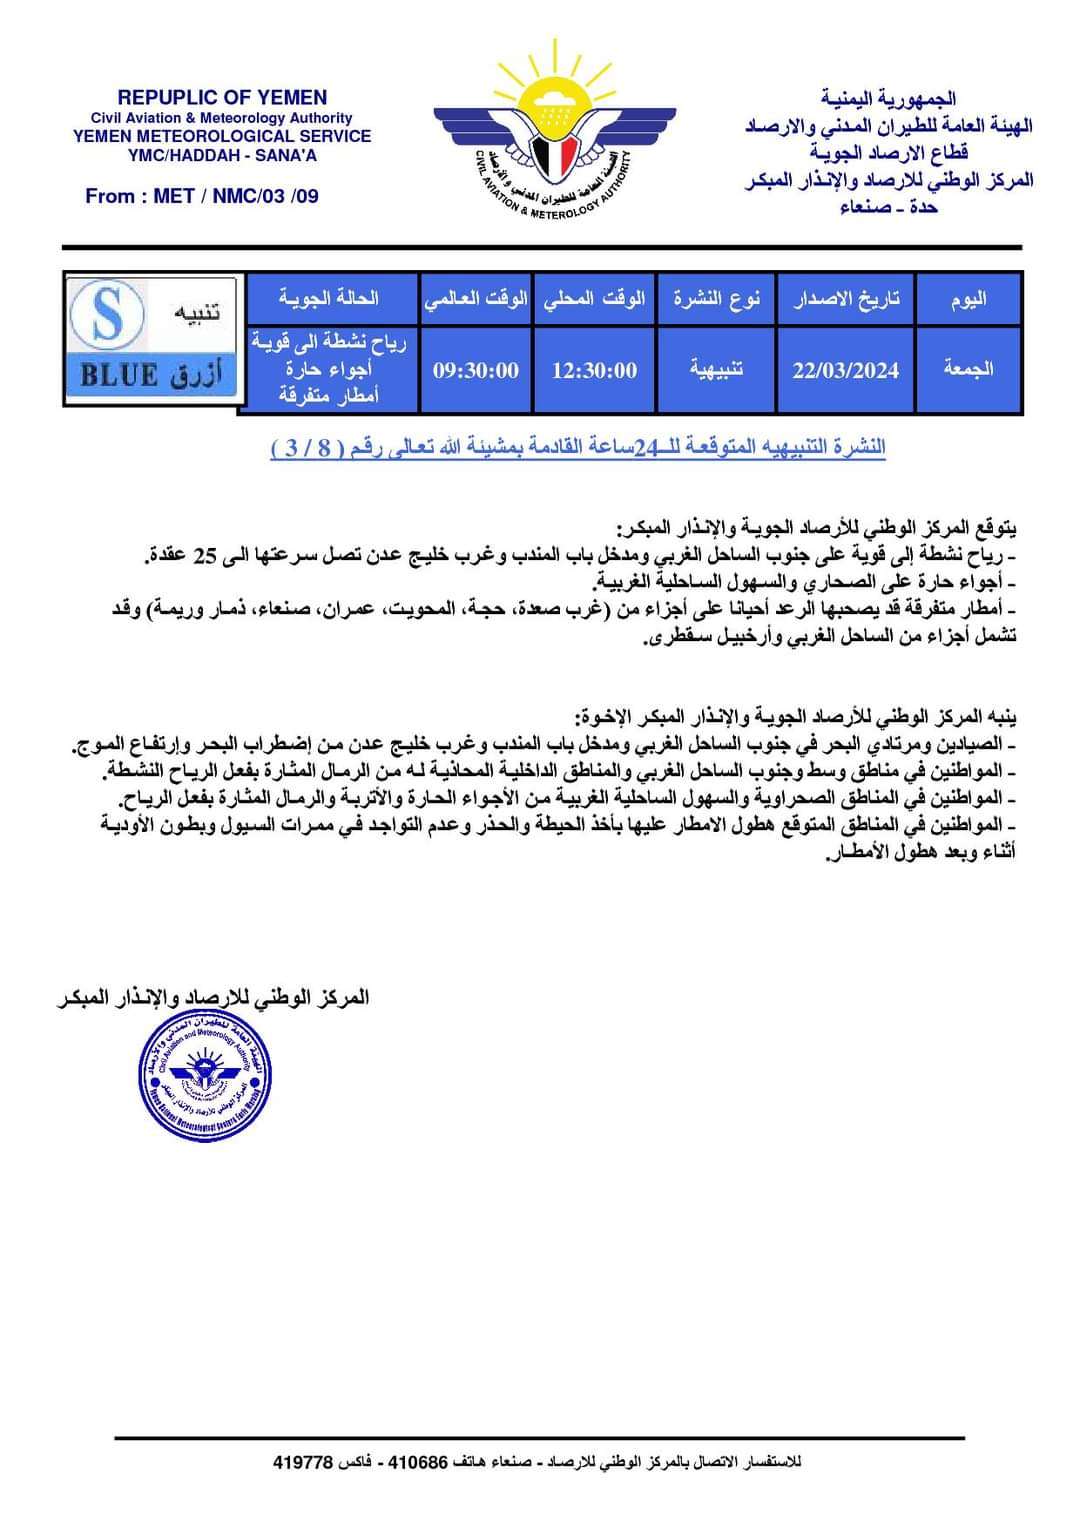 تعرف على النشرة التنبيهية المتوقعة لل24 ساعة القادمة لأحوال الطقس في اليمن